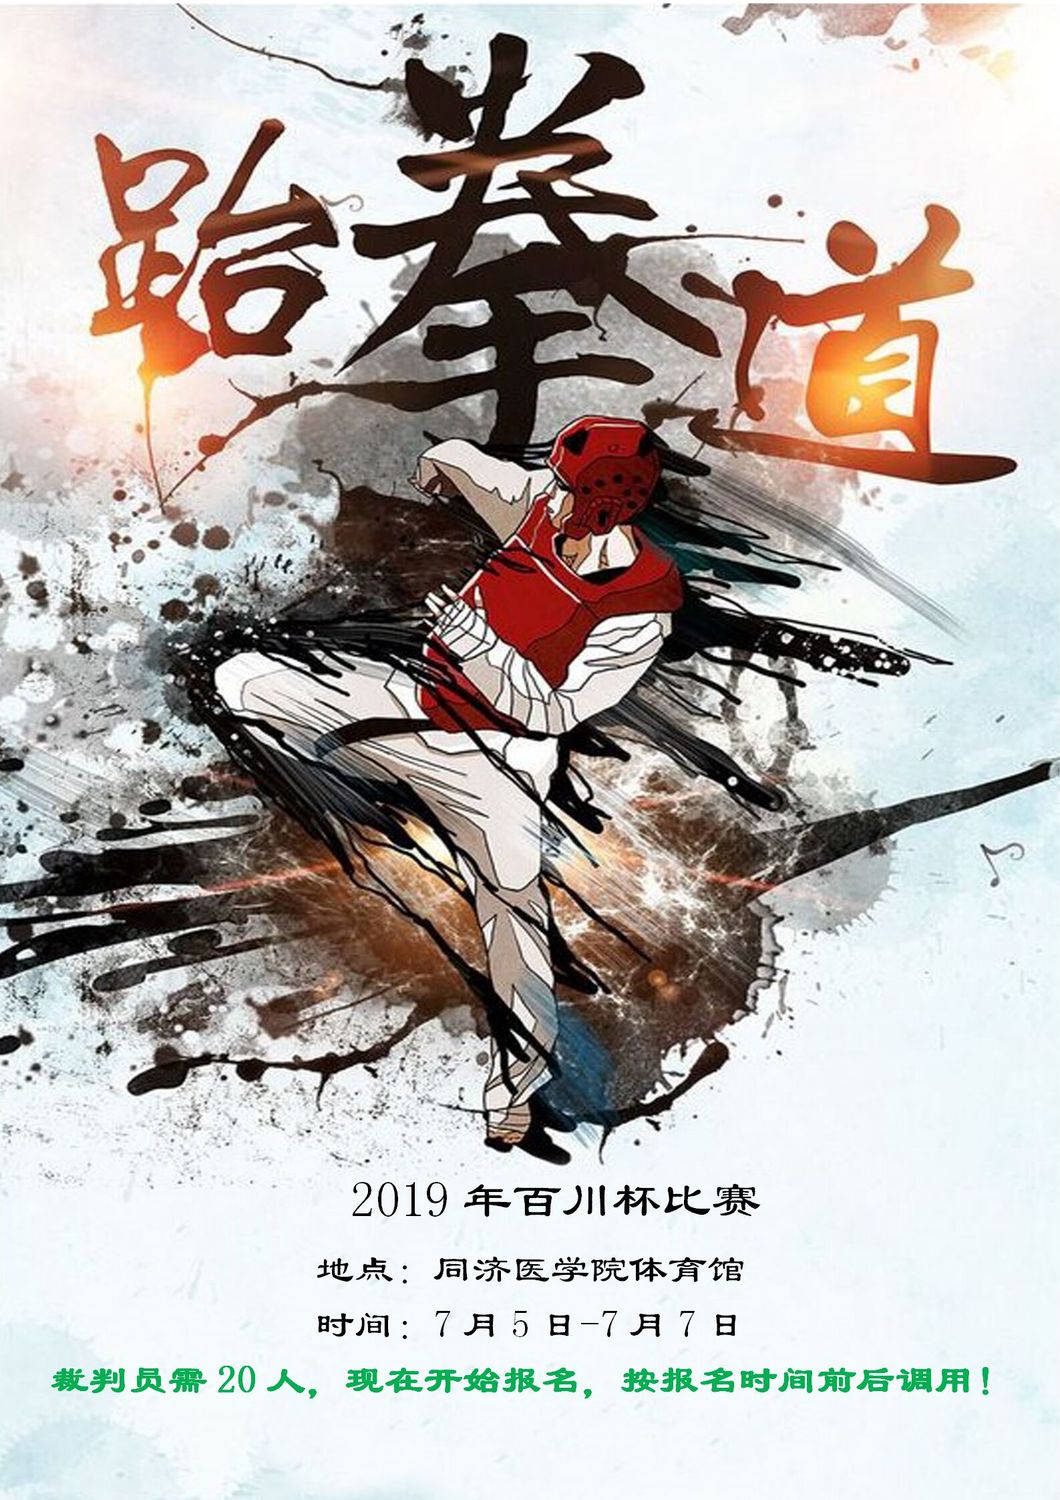 赛事4-2019年百川杯跆拳道比赛7月5日-7月7日_01.jpg